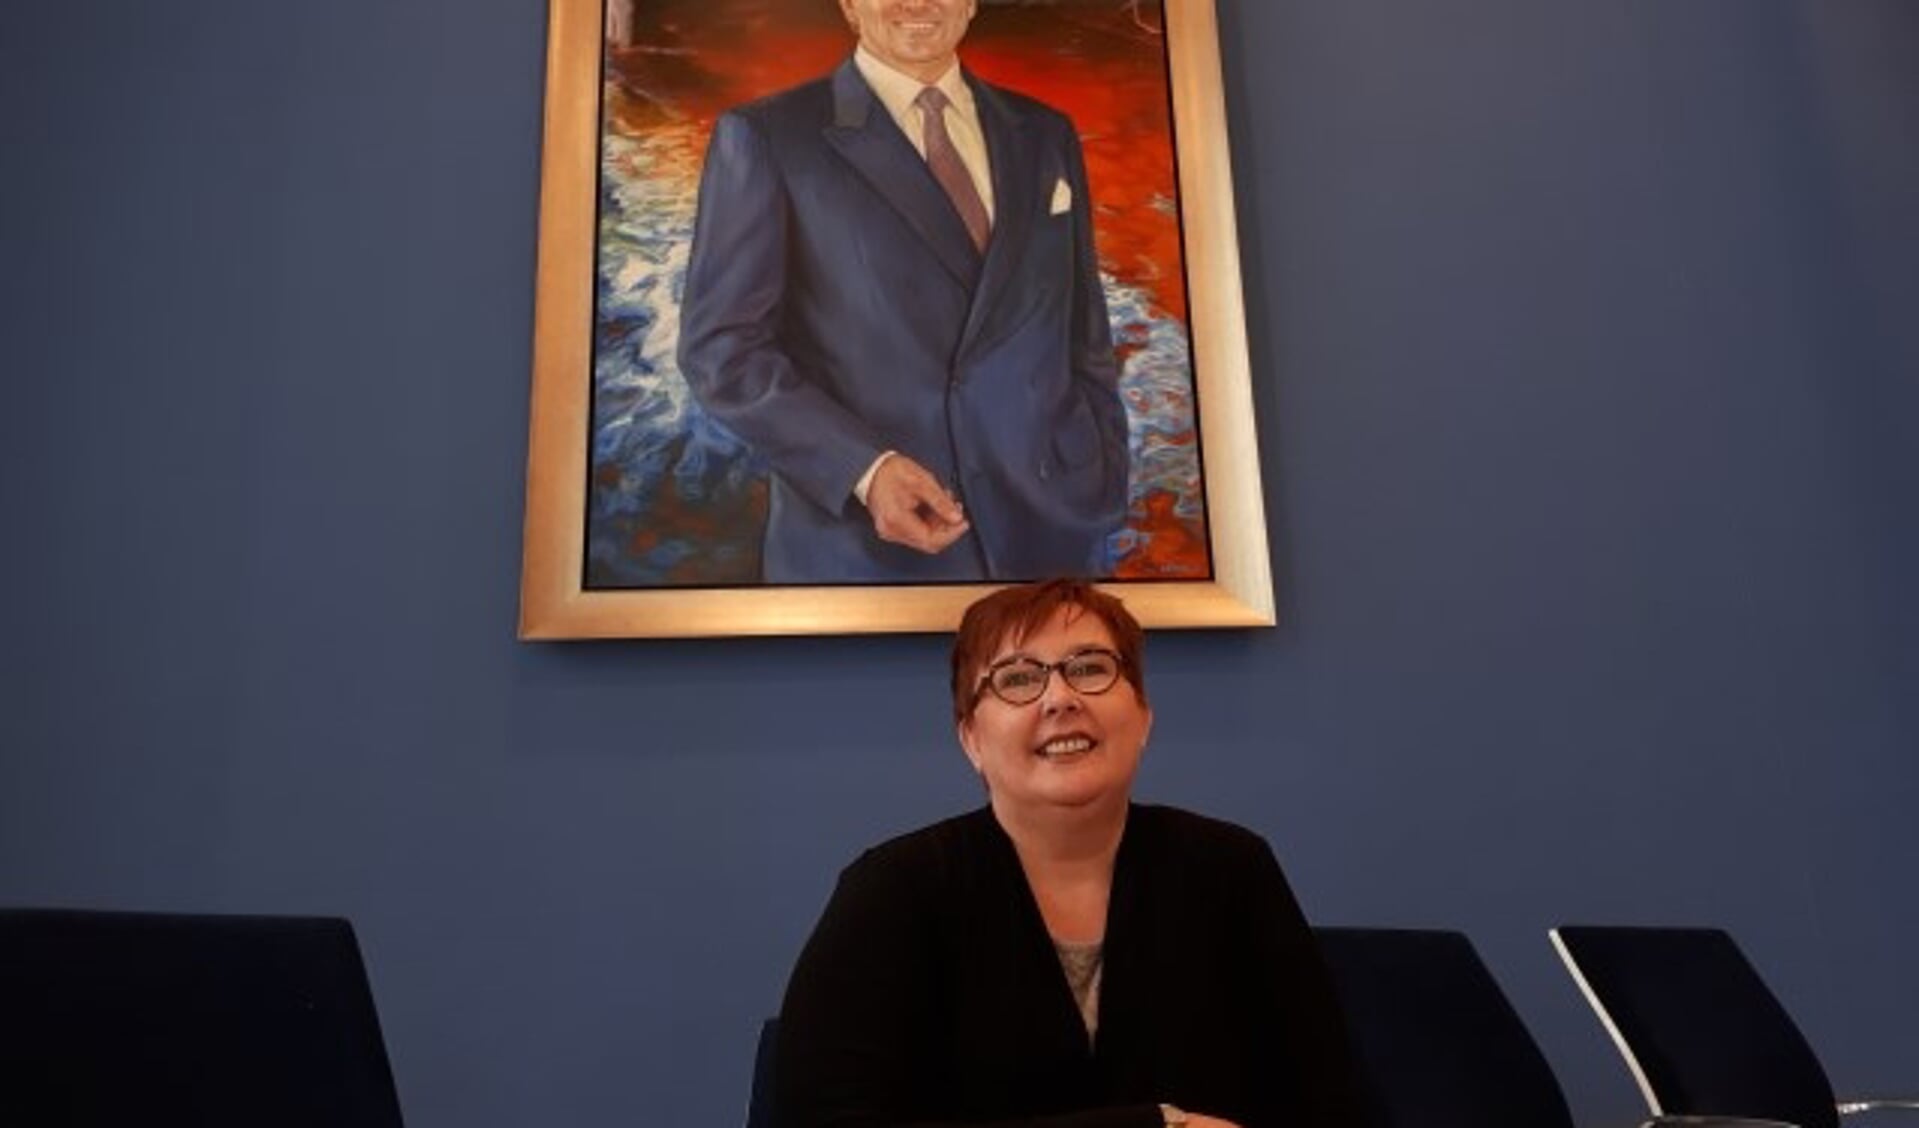 Wethouder Arianne Hollander op haar wethouderszetel in de gemeenteraadzaal vanwaar zij acht jaar lang Veenendaal bestuurde. (Foto: Jaap Pilon)